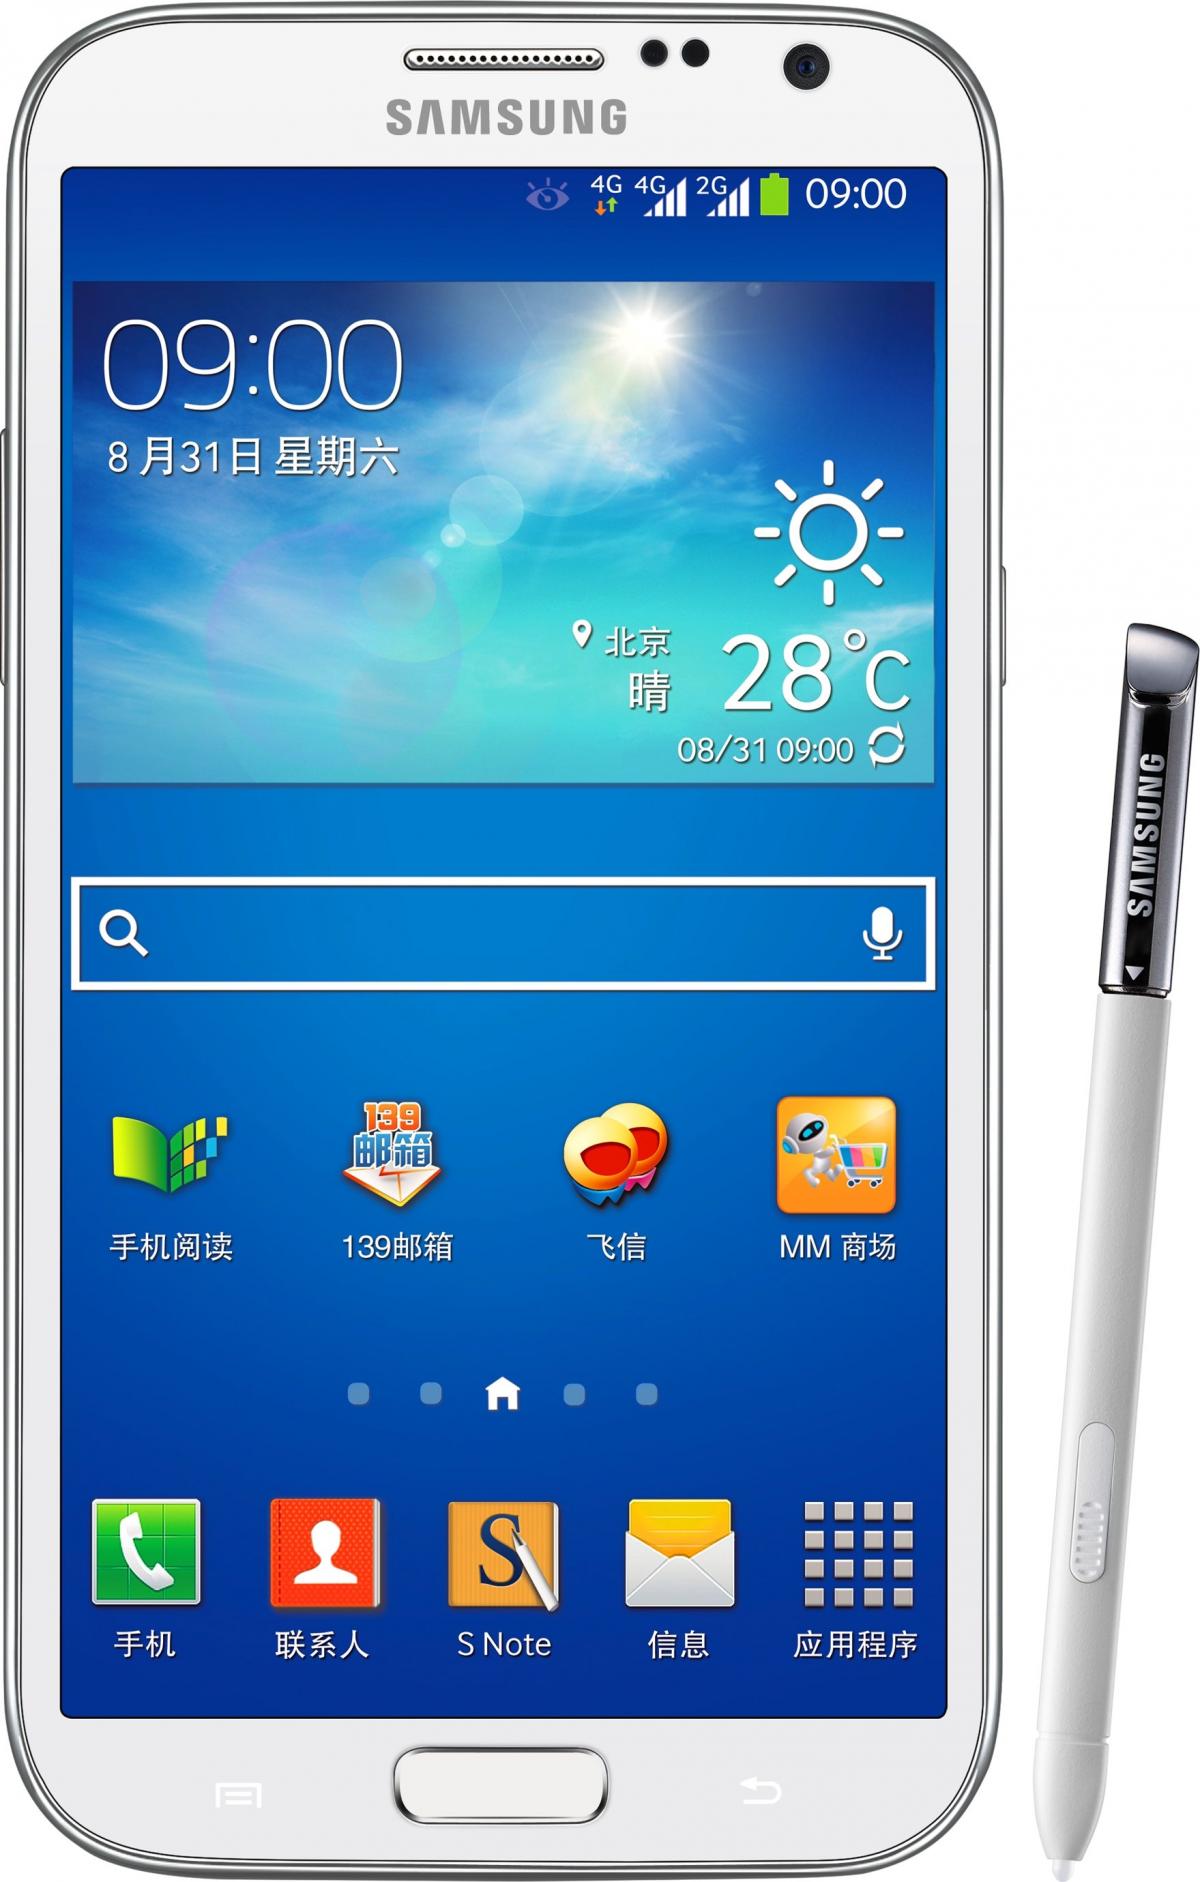 Galaxy Note 2 (TD LTE) GT-N7108D